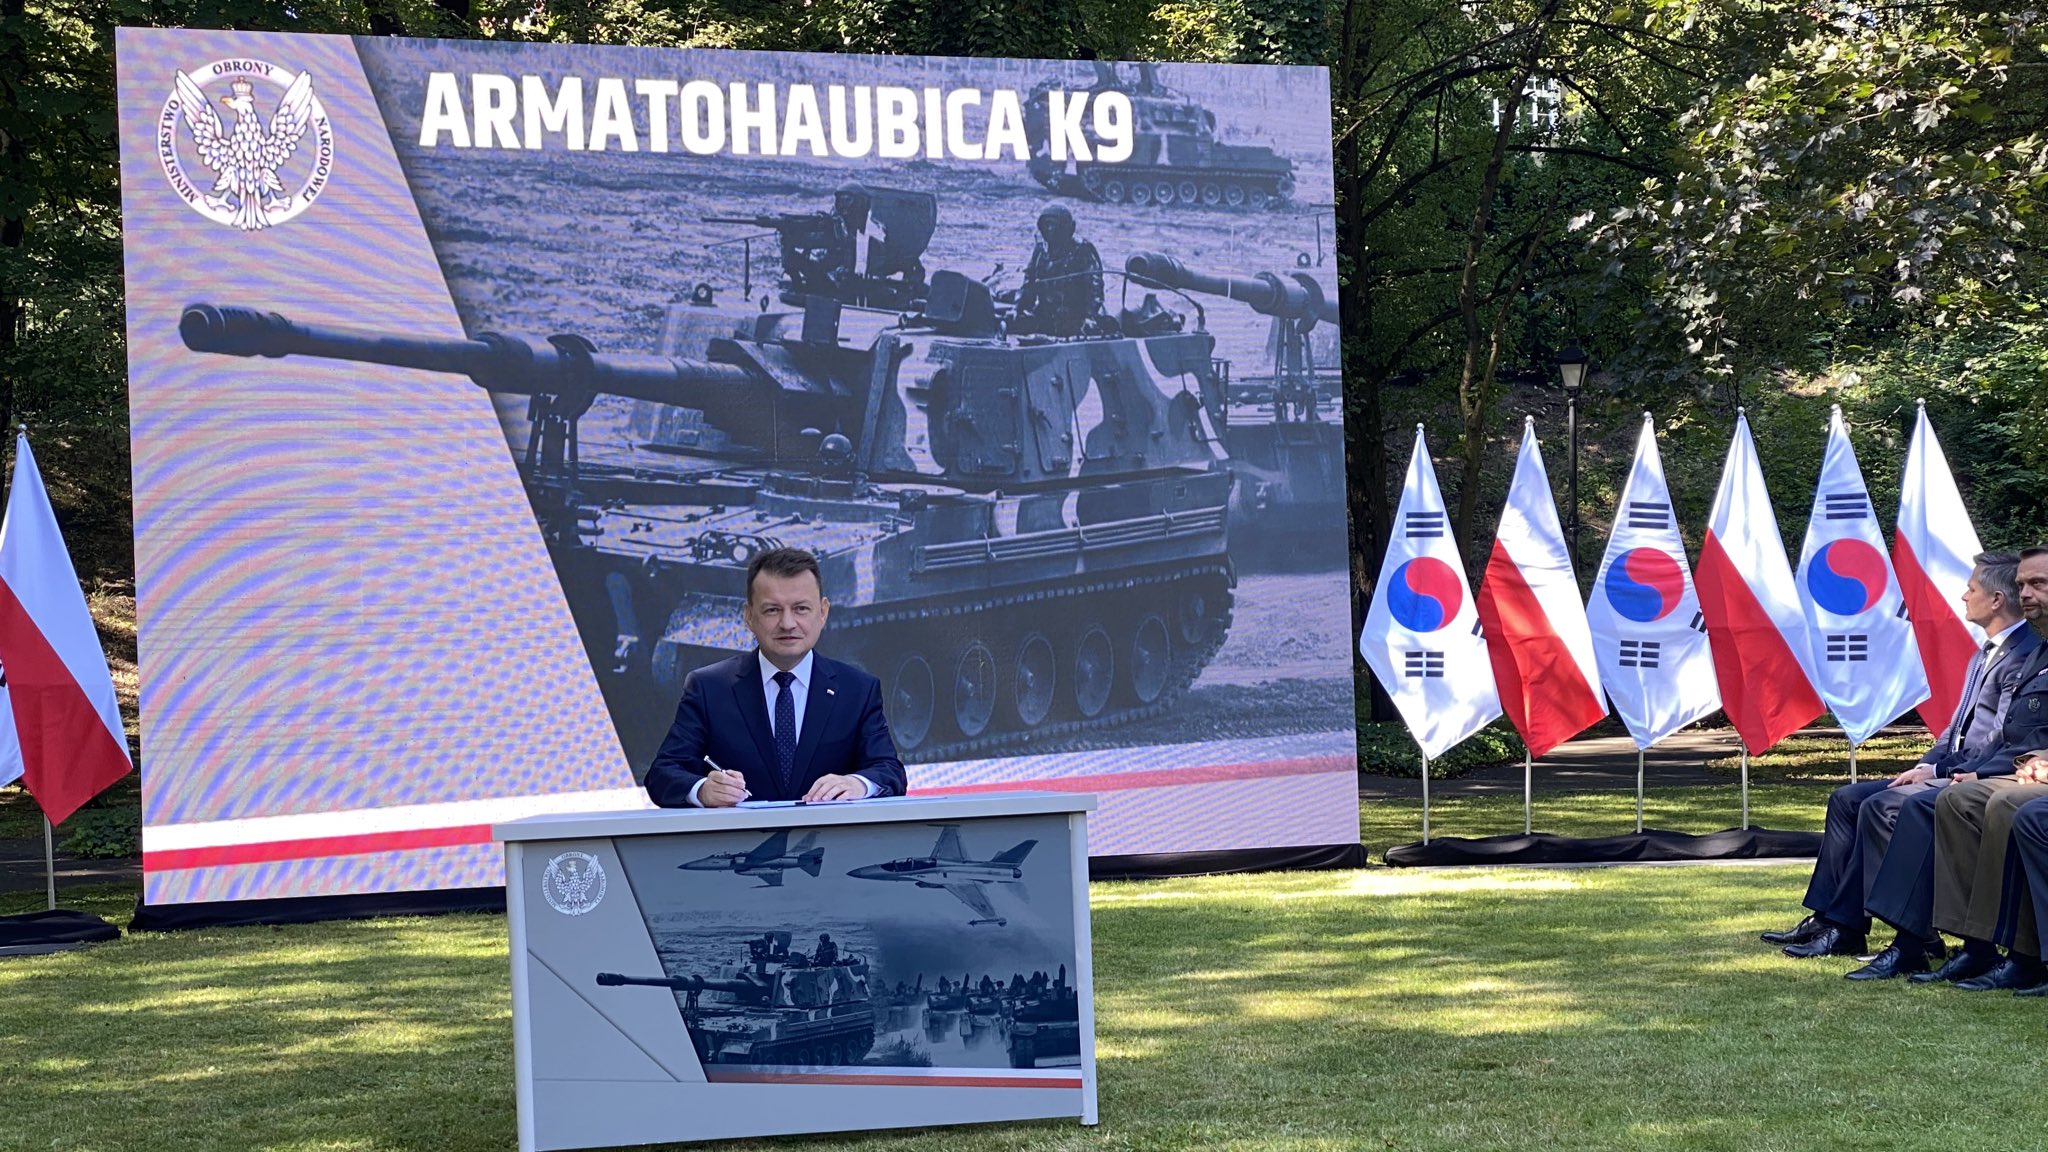 Міністр оборони Польщі Маріуш Блащак затвердив контракт на закупівлю 1000 танків К2 та 672 гаубиці К9, 27 липня 2022. Польща. Фото: Міноборони Польщі